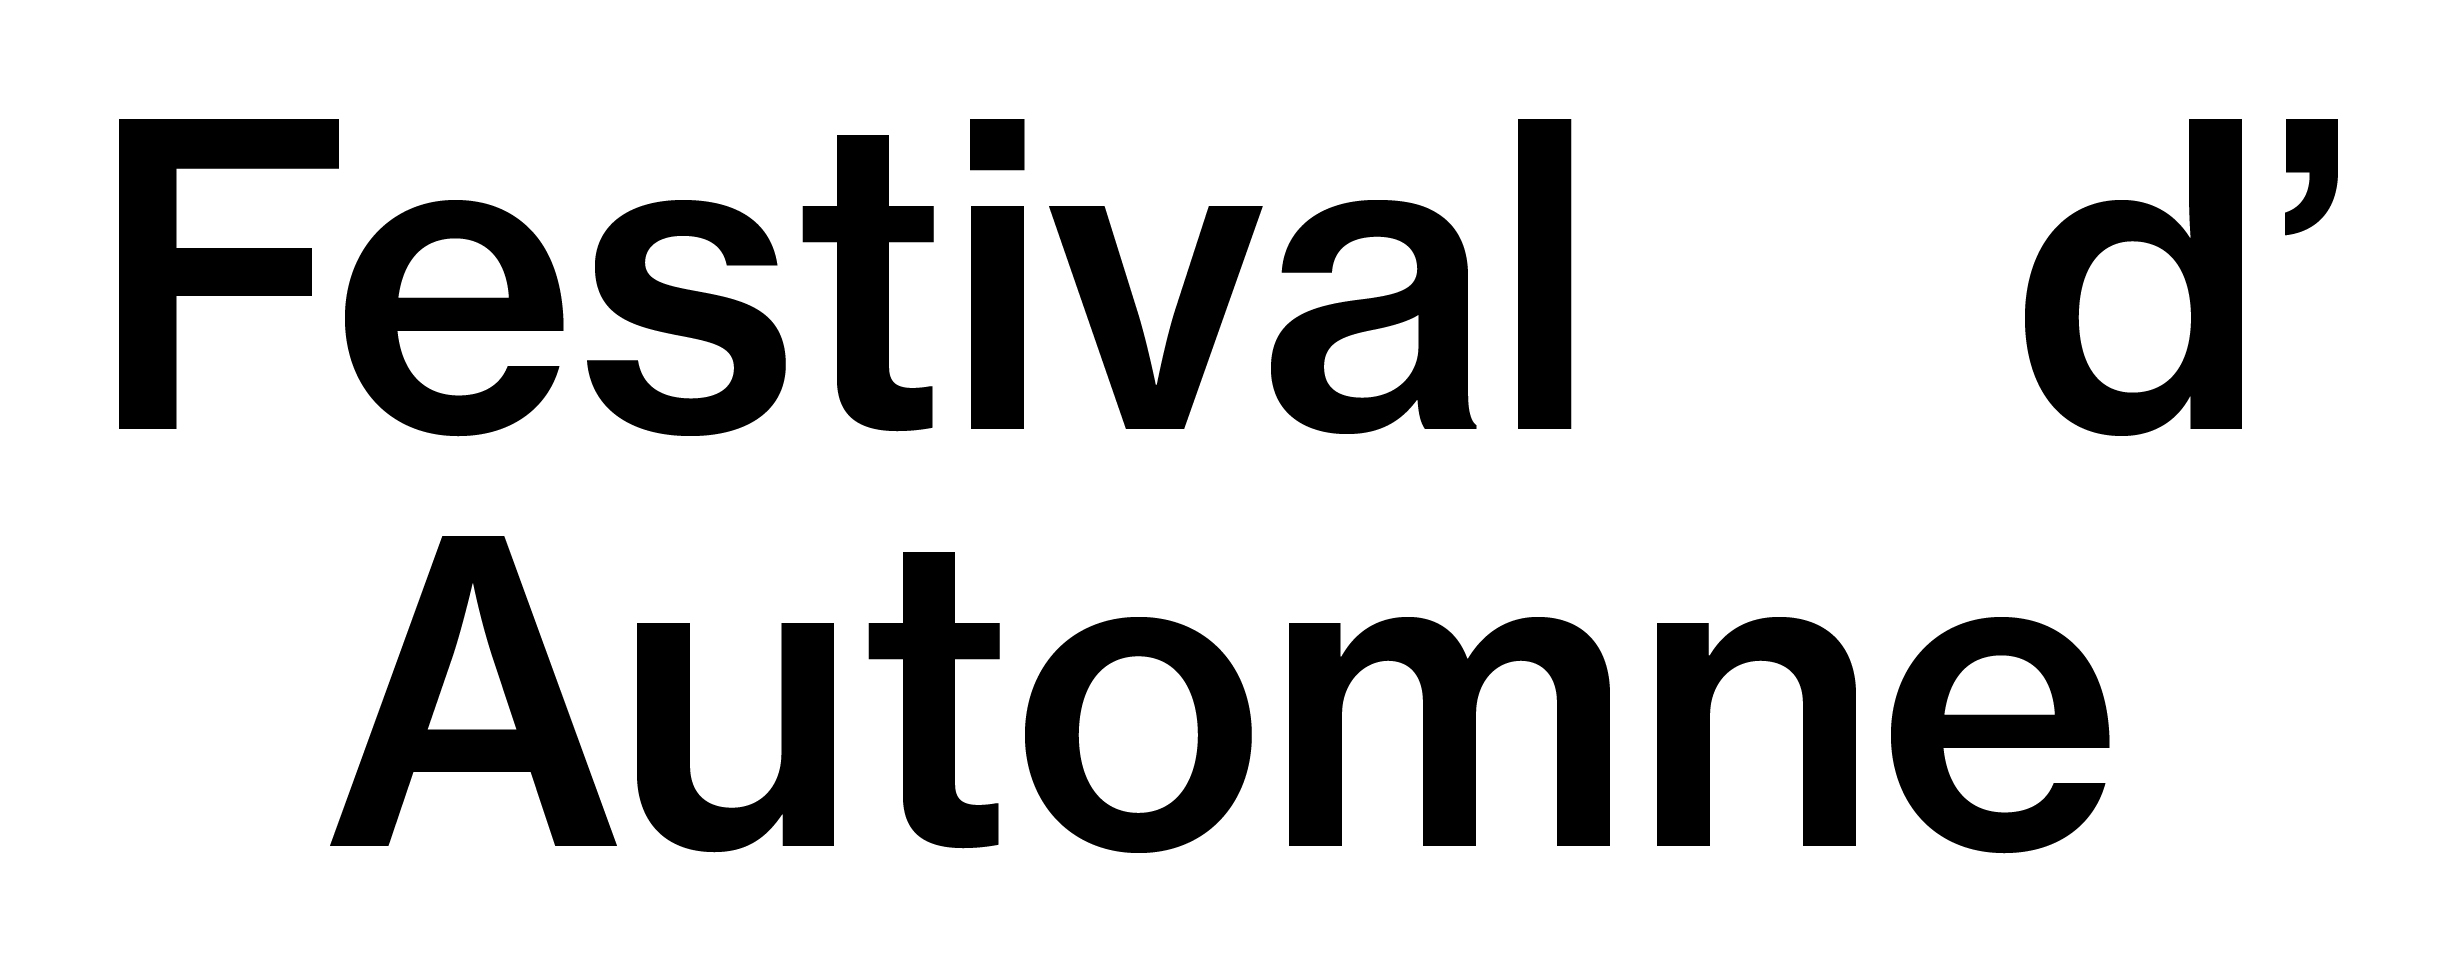 Festival d'Automne